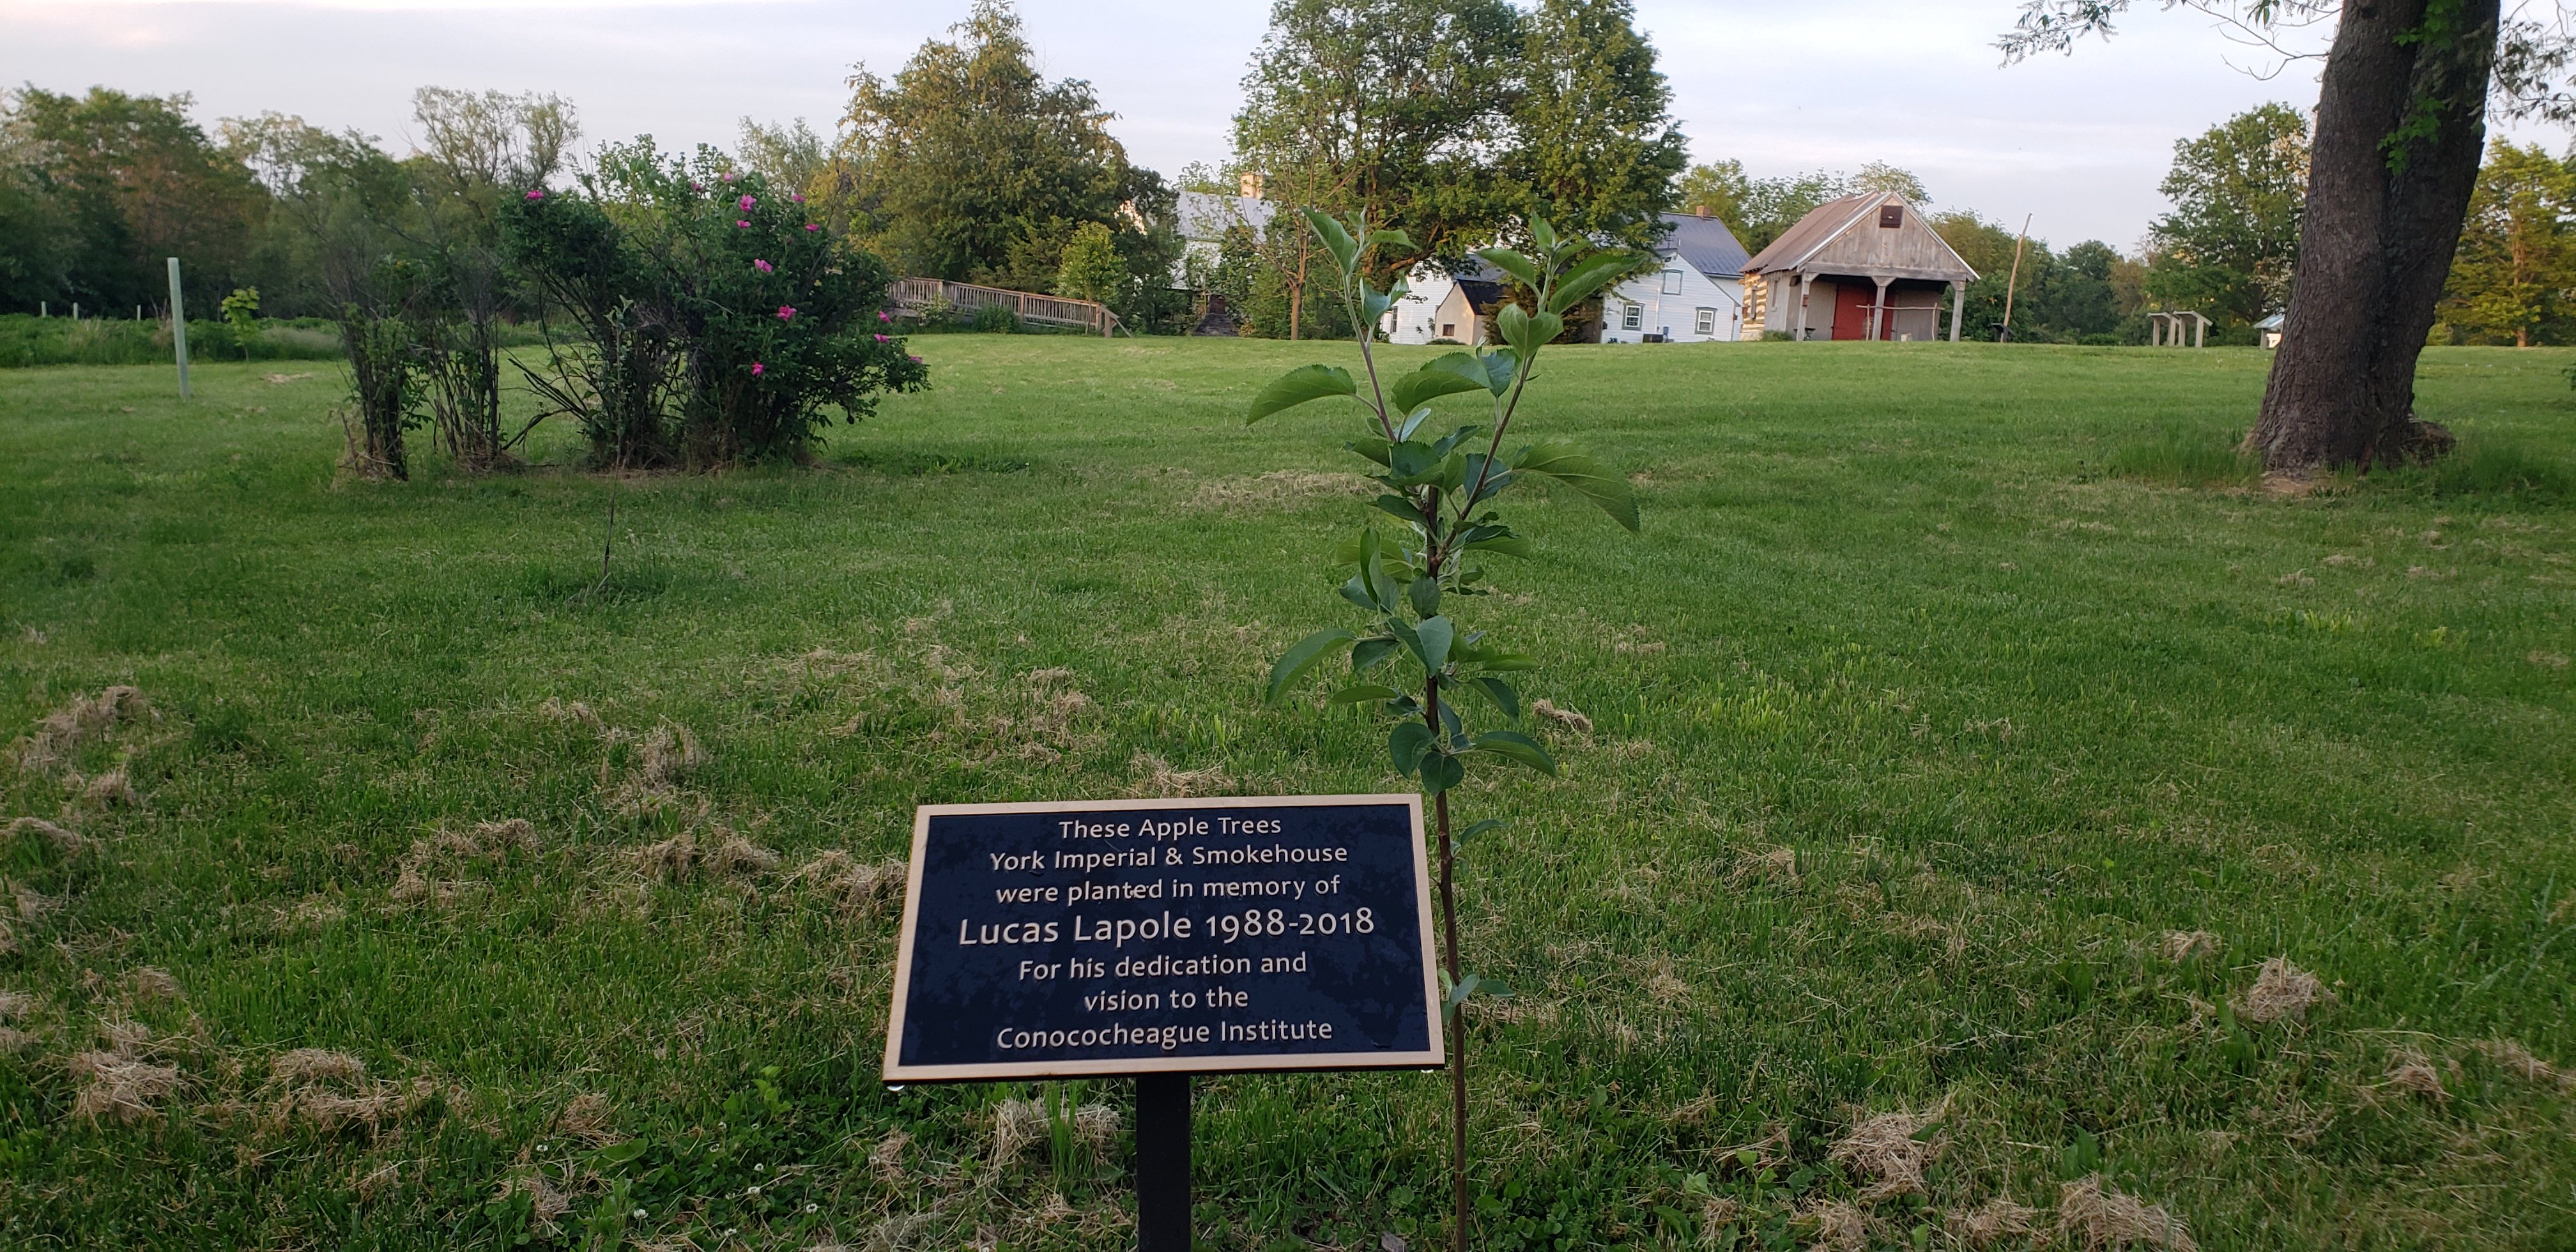 Lucas Lapole Memorial Tree